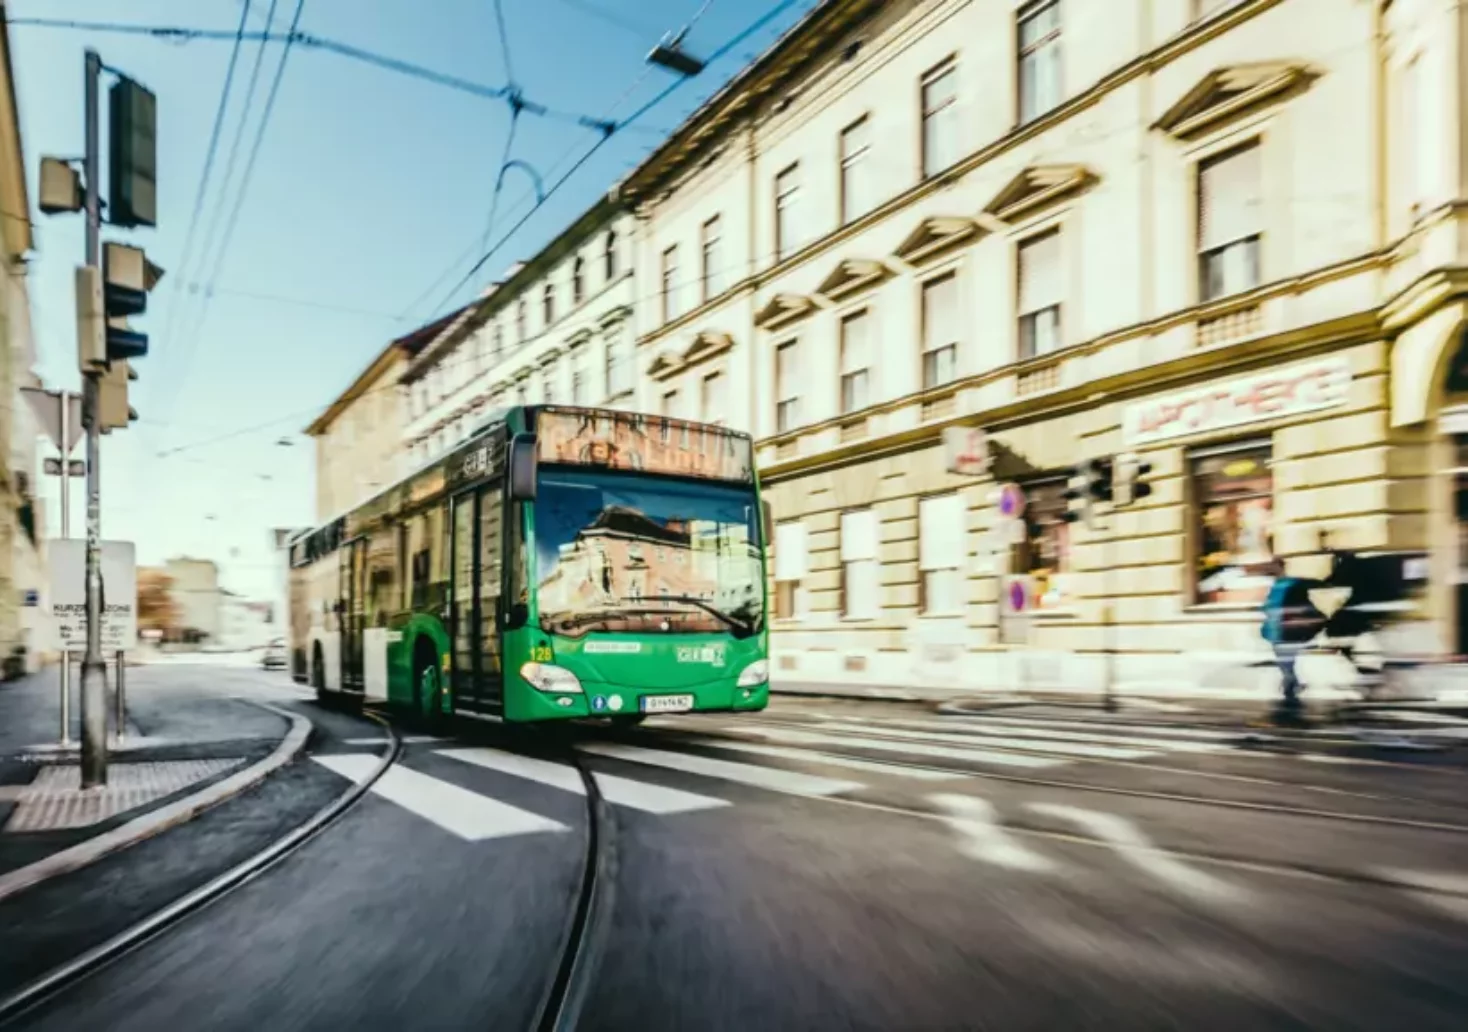 Bild auf 5min.at zeigt einen Bus der Graz Linien.